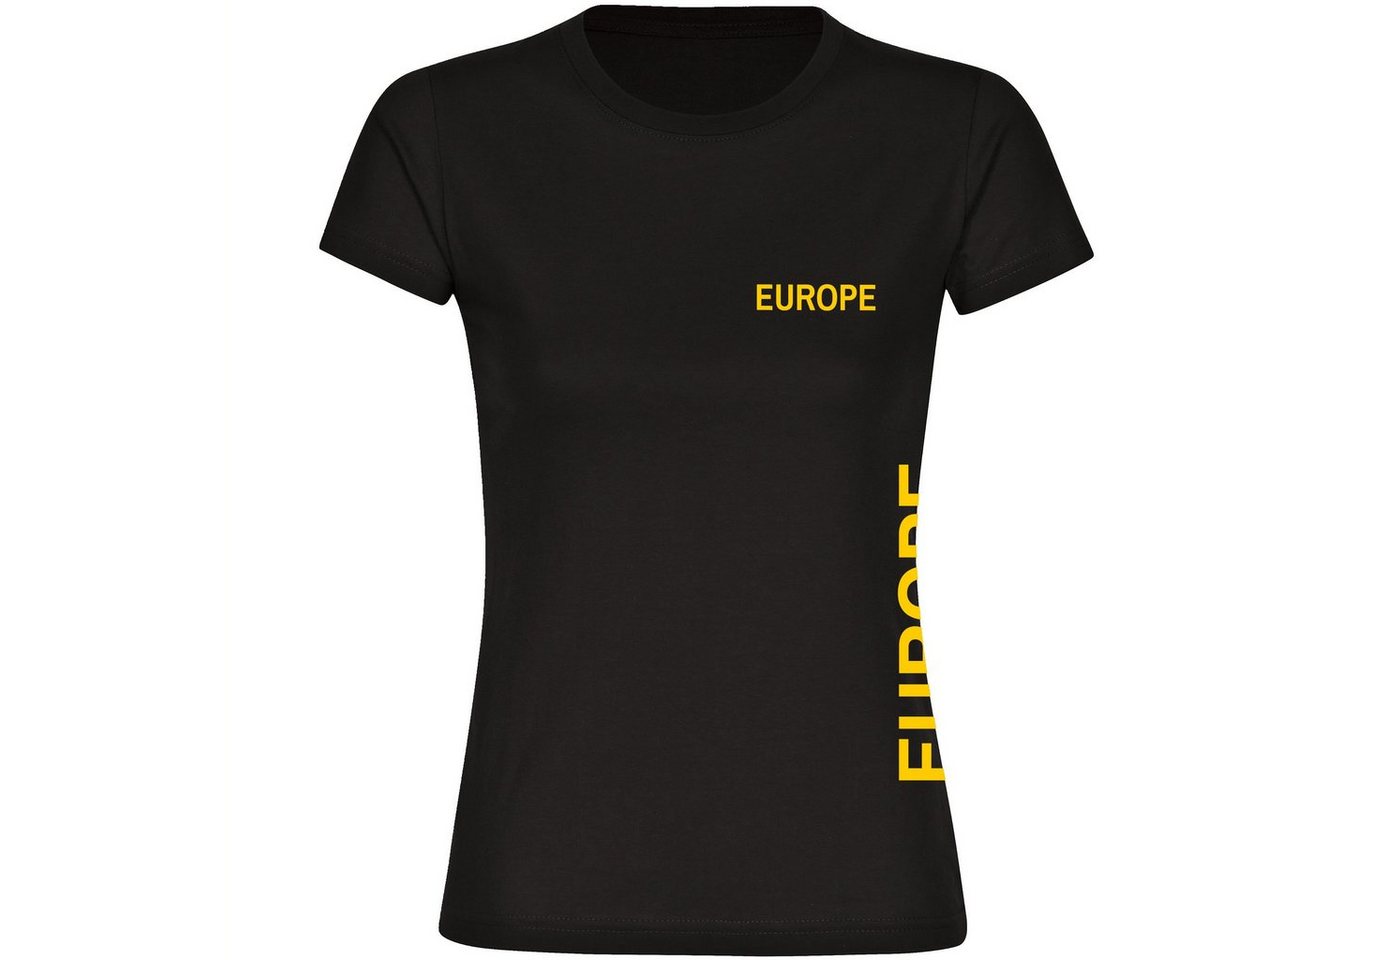 multifanshop T-Shirt Damen Europe - Brust & Seite - Frauen von multifanshop